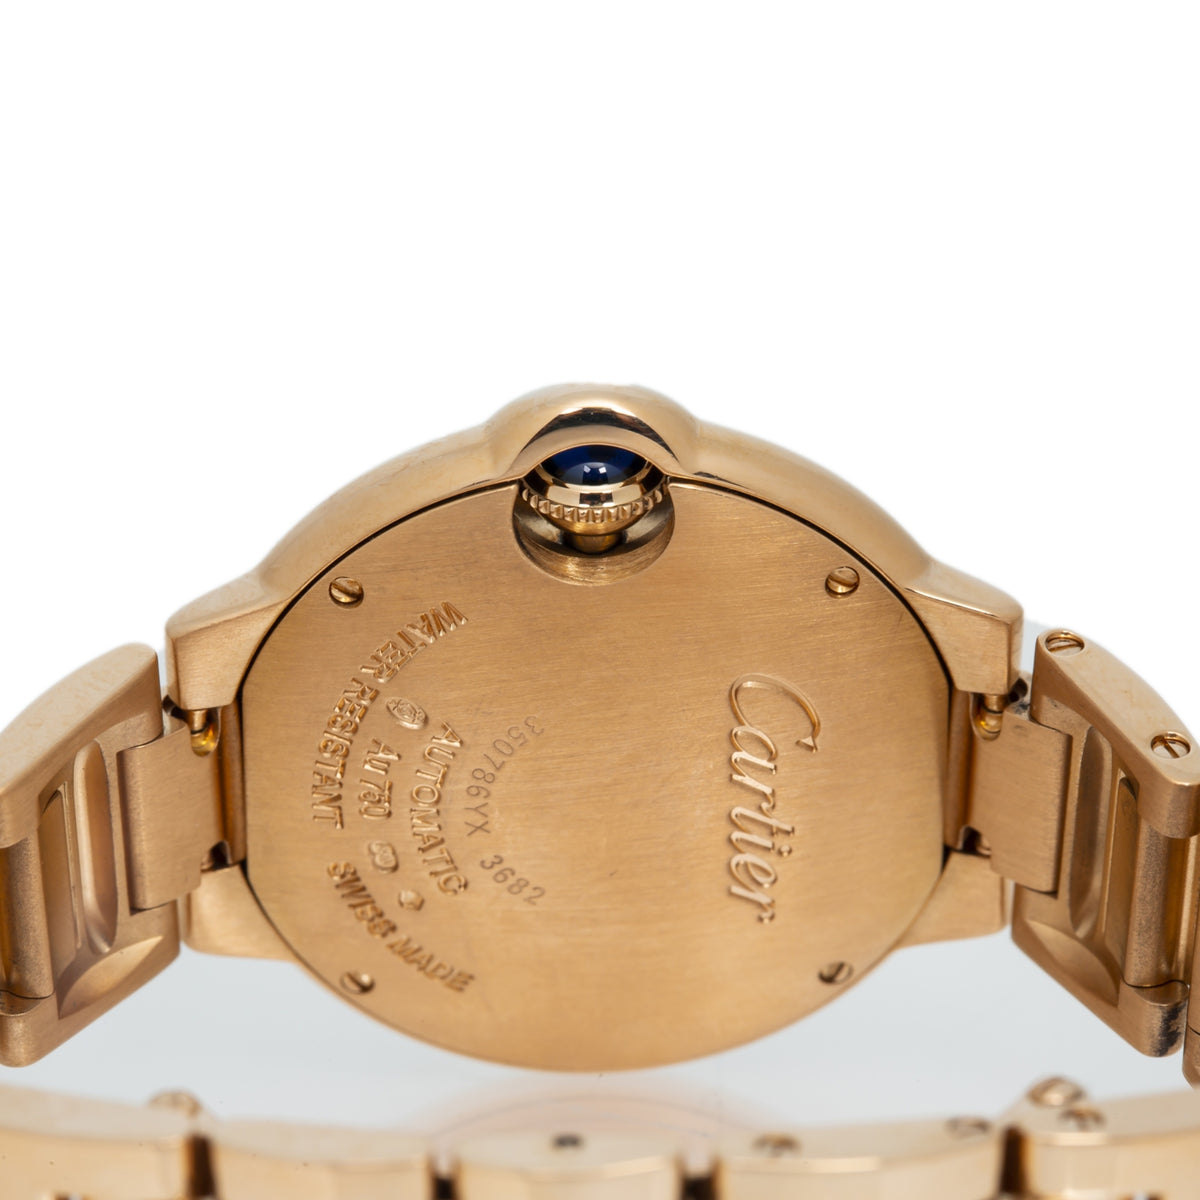 Cartier Ballon Bleu WJBB0066 3682 18K Rose Gold Factory Diamond Bezel Watch 33mm